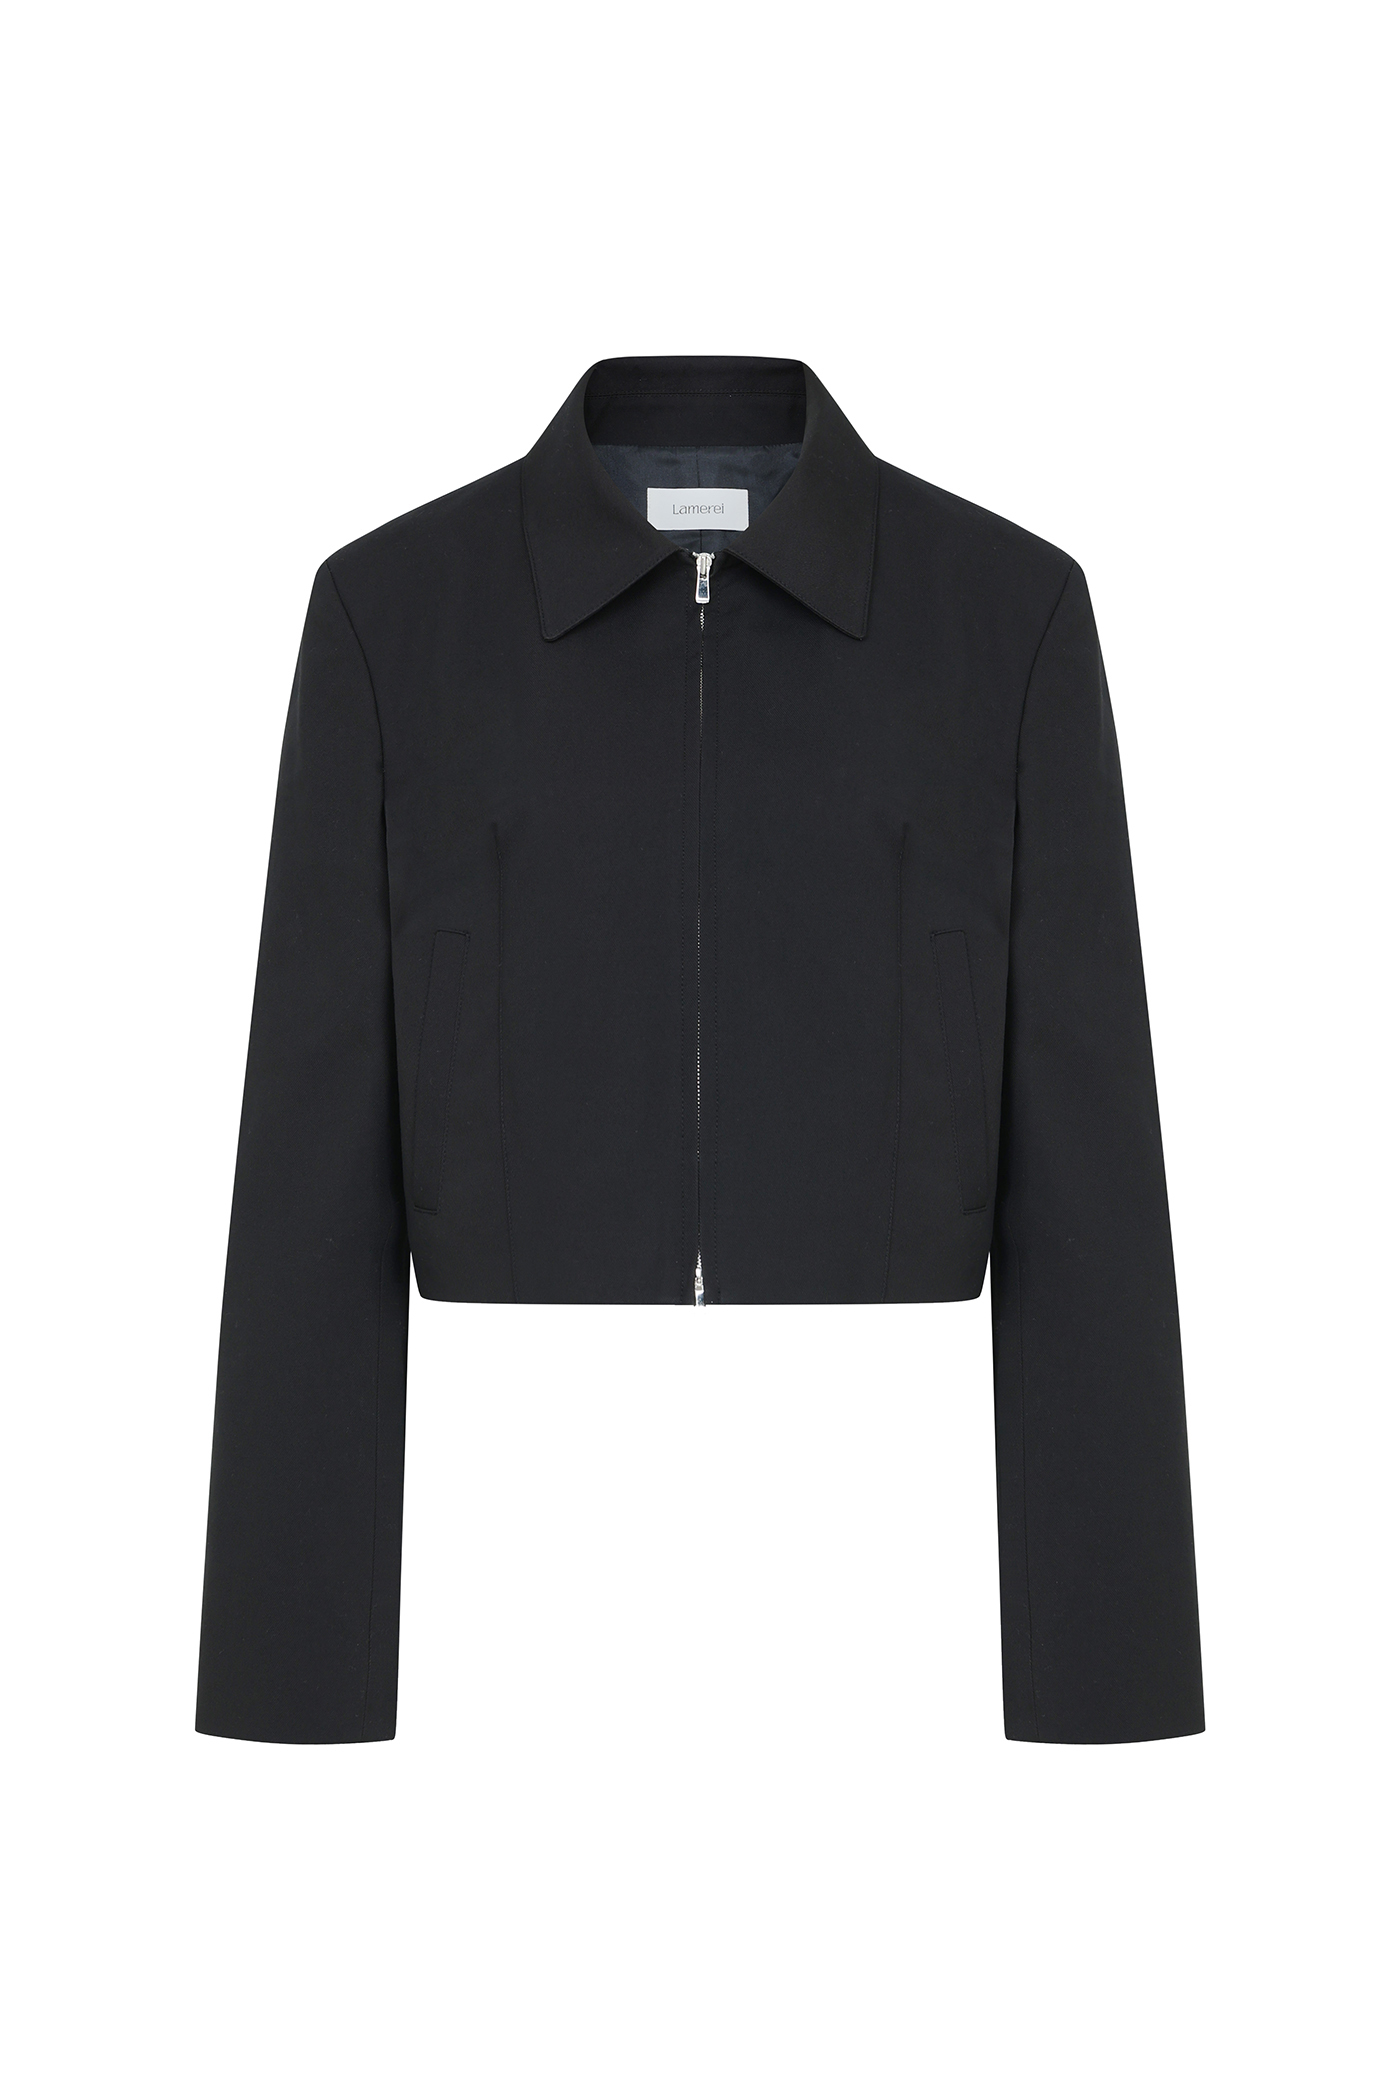 Crop Collar Zip up Jacket[LMBCSPJK101]-Black